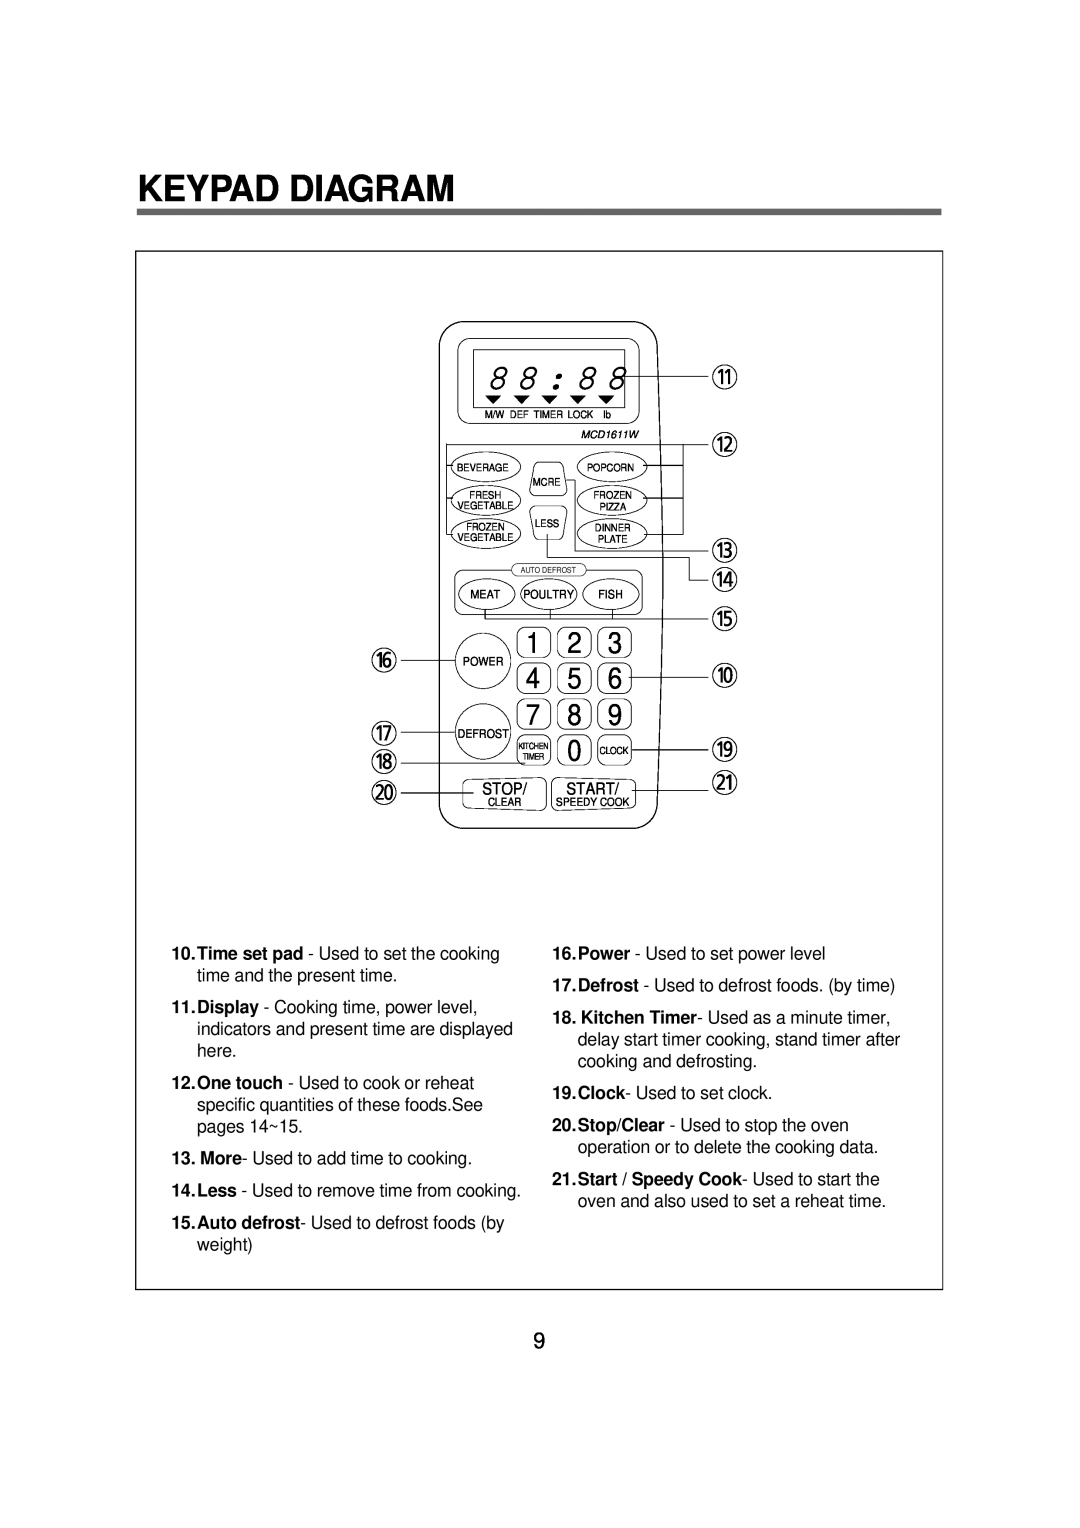 Magic Chef MCD1611B manual Keypad Diagram, 8 8, q w e r t 